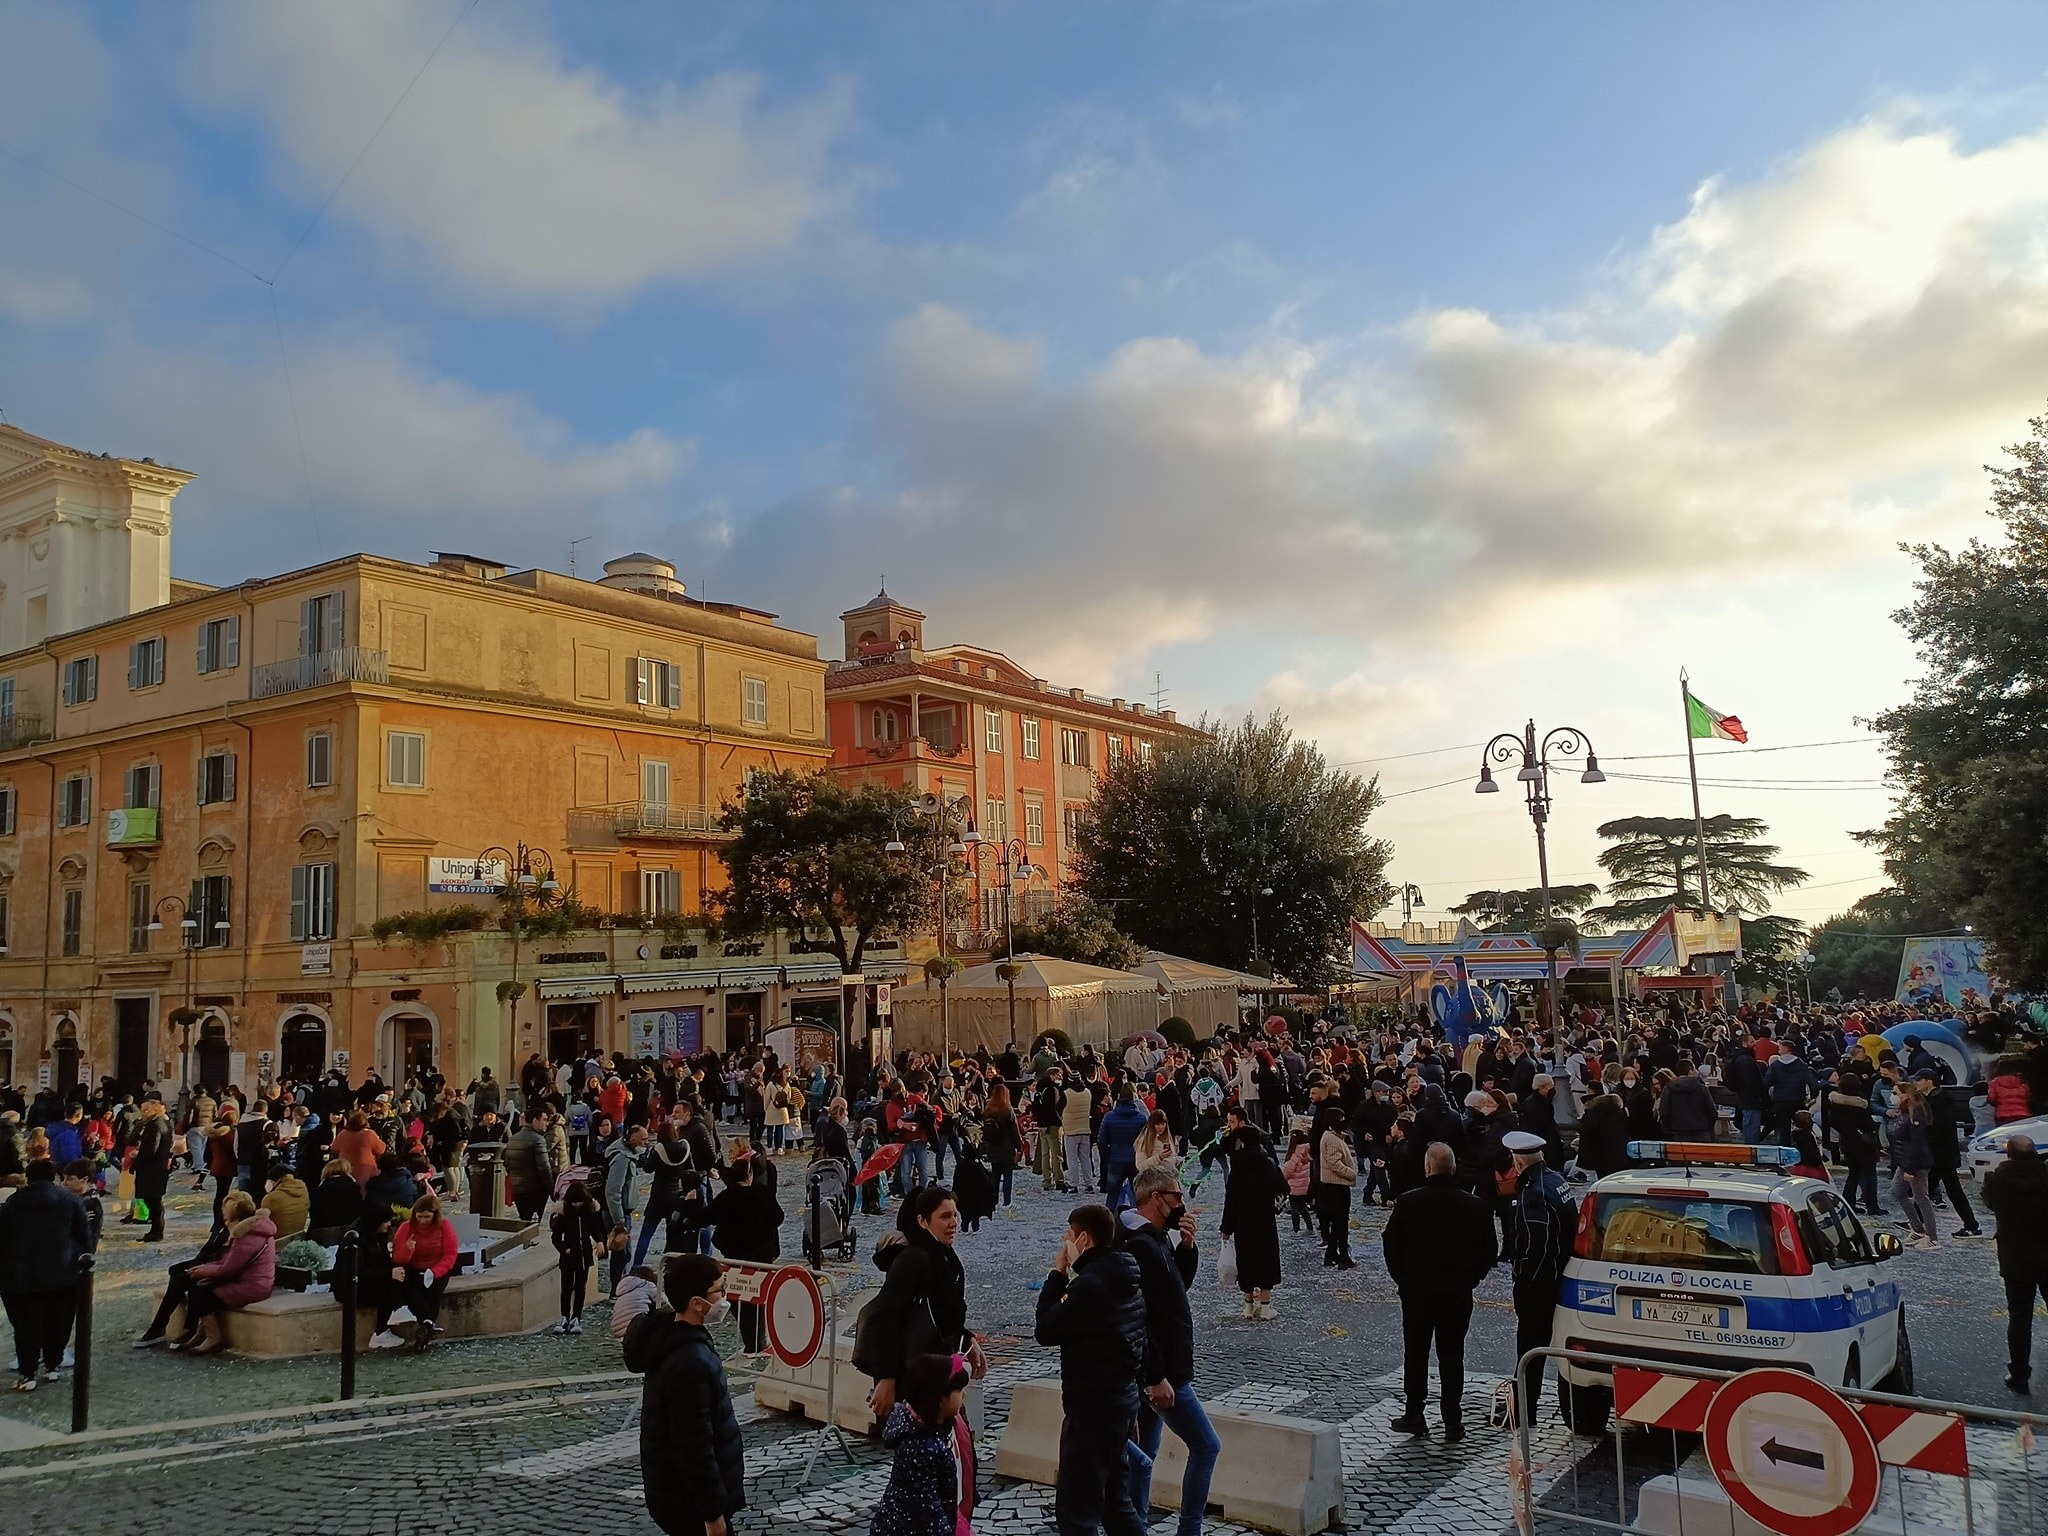 Genzano festeggia il carnevale (statico), bimbi e famiglie in piazza Frasconi